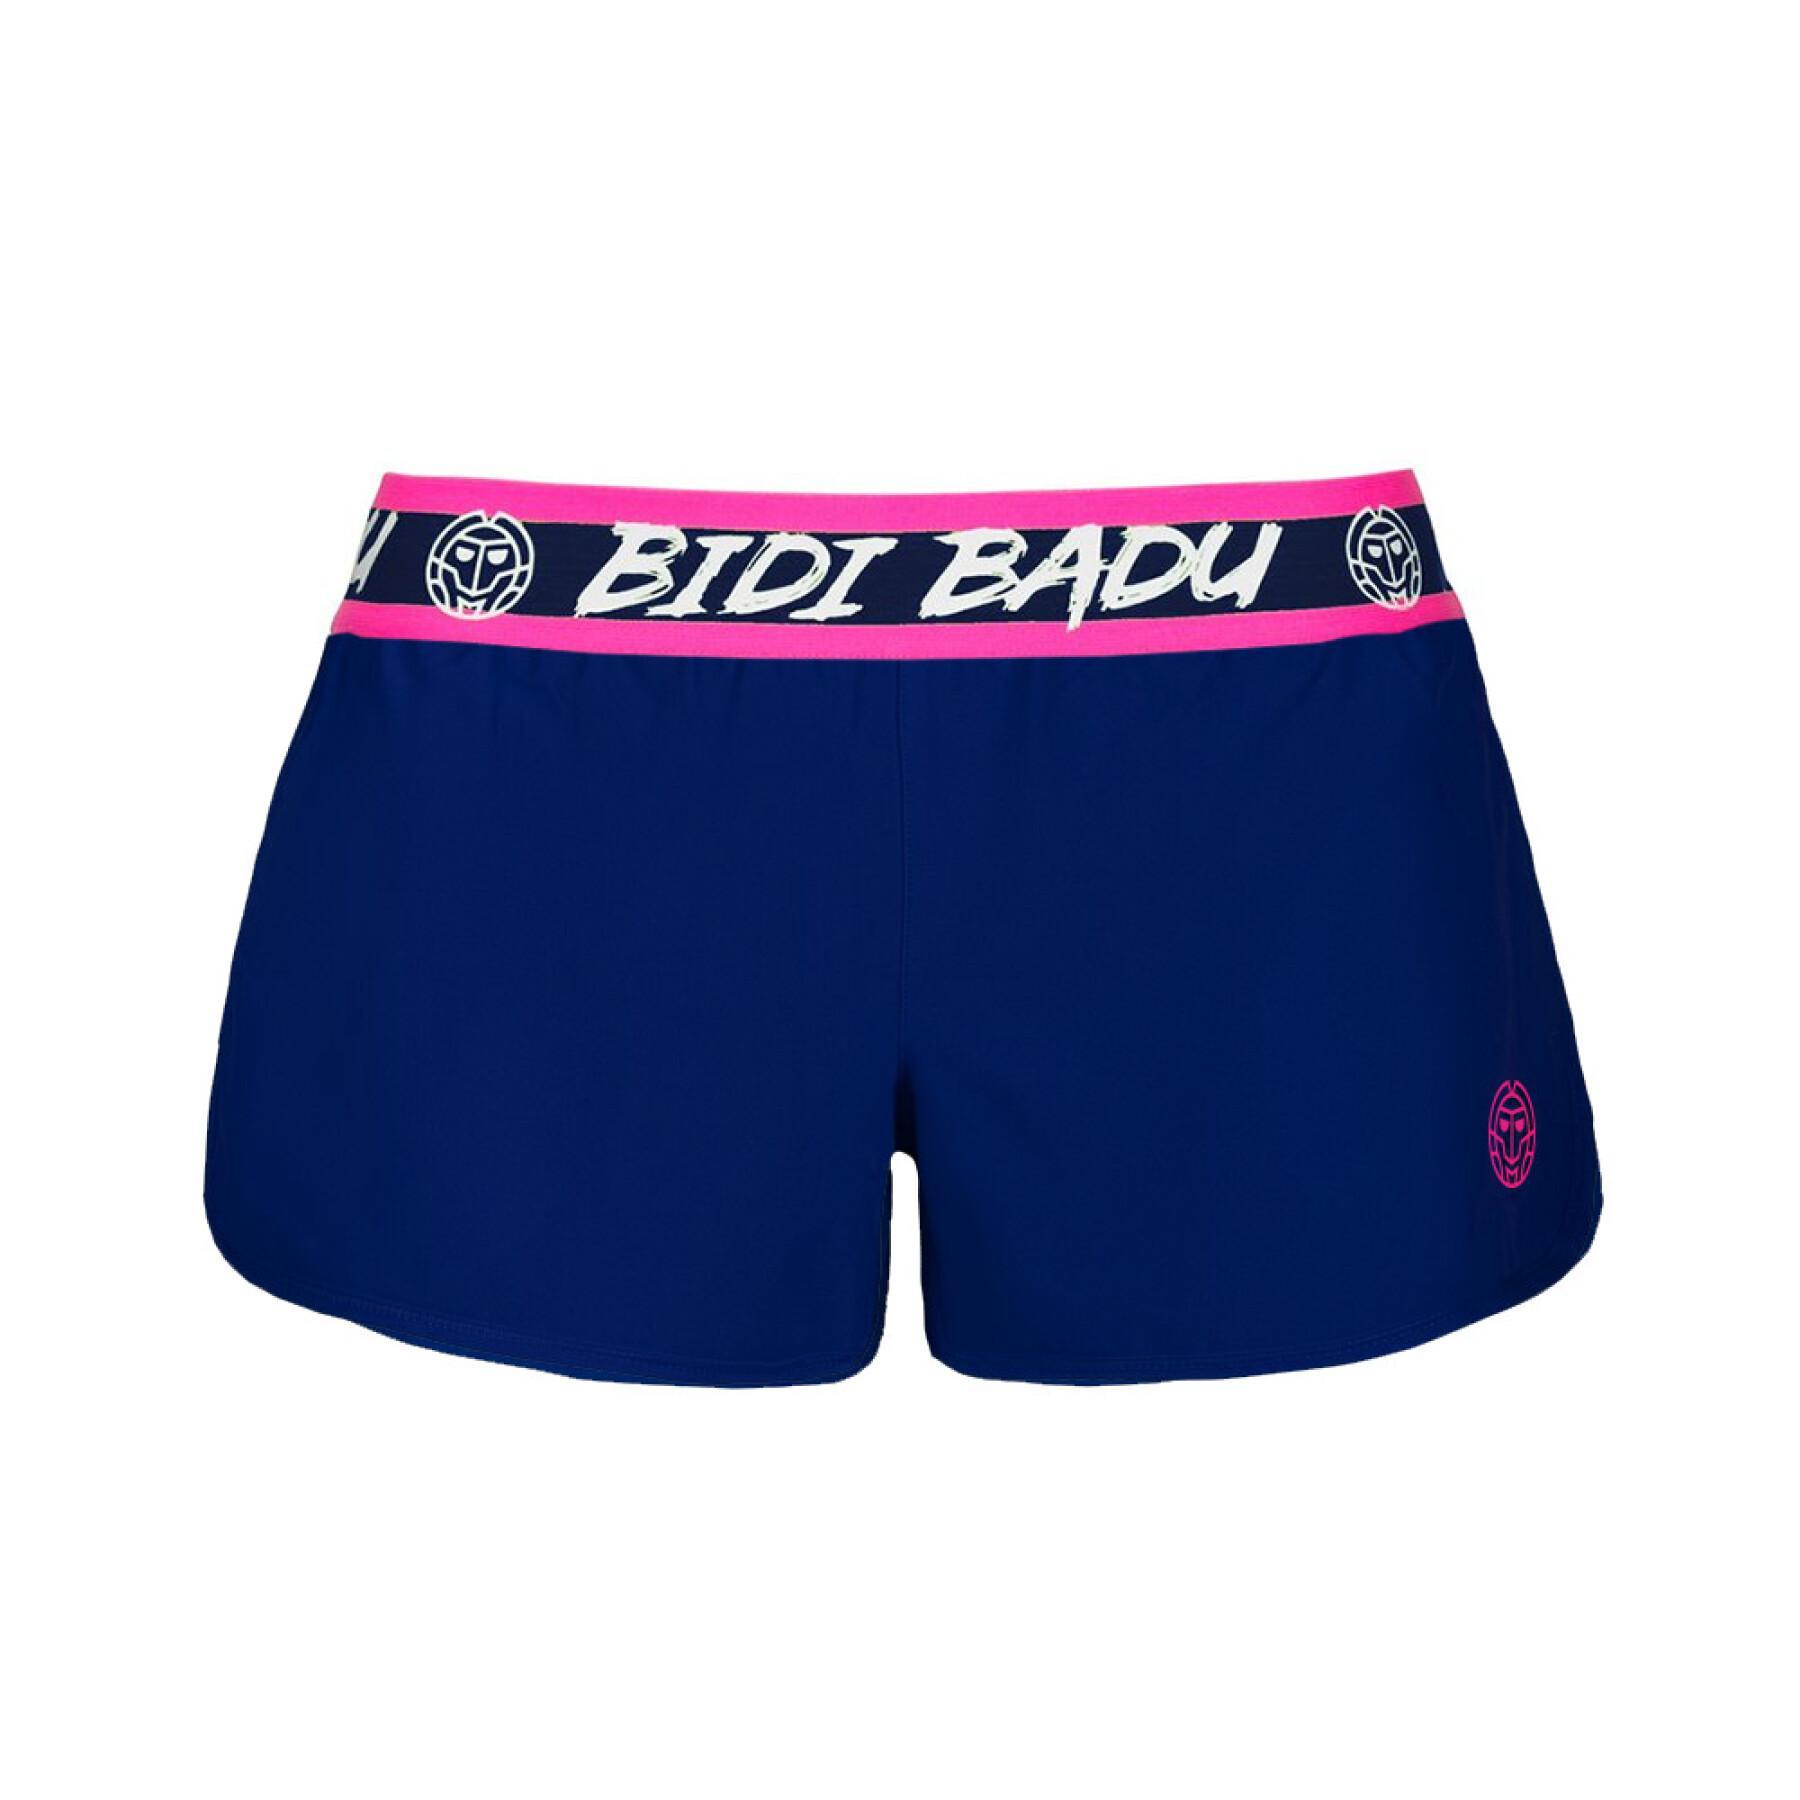 2 in 1 shorts for girls Bidi Badu Cara Tech